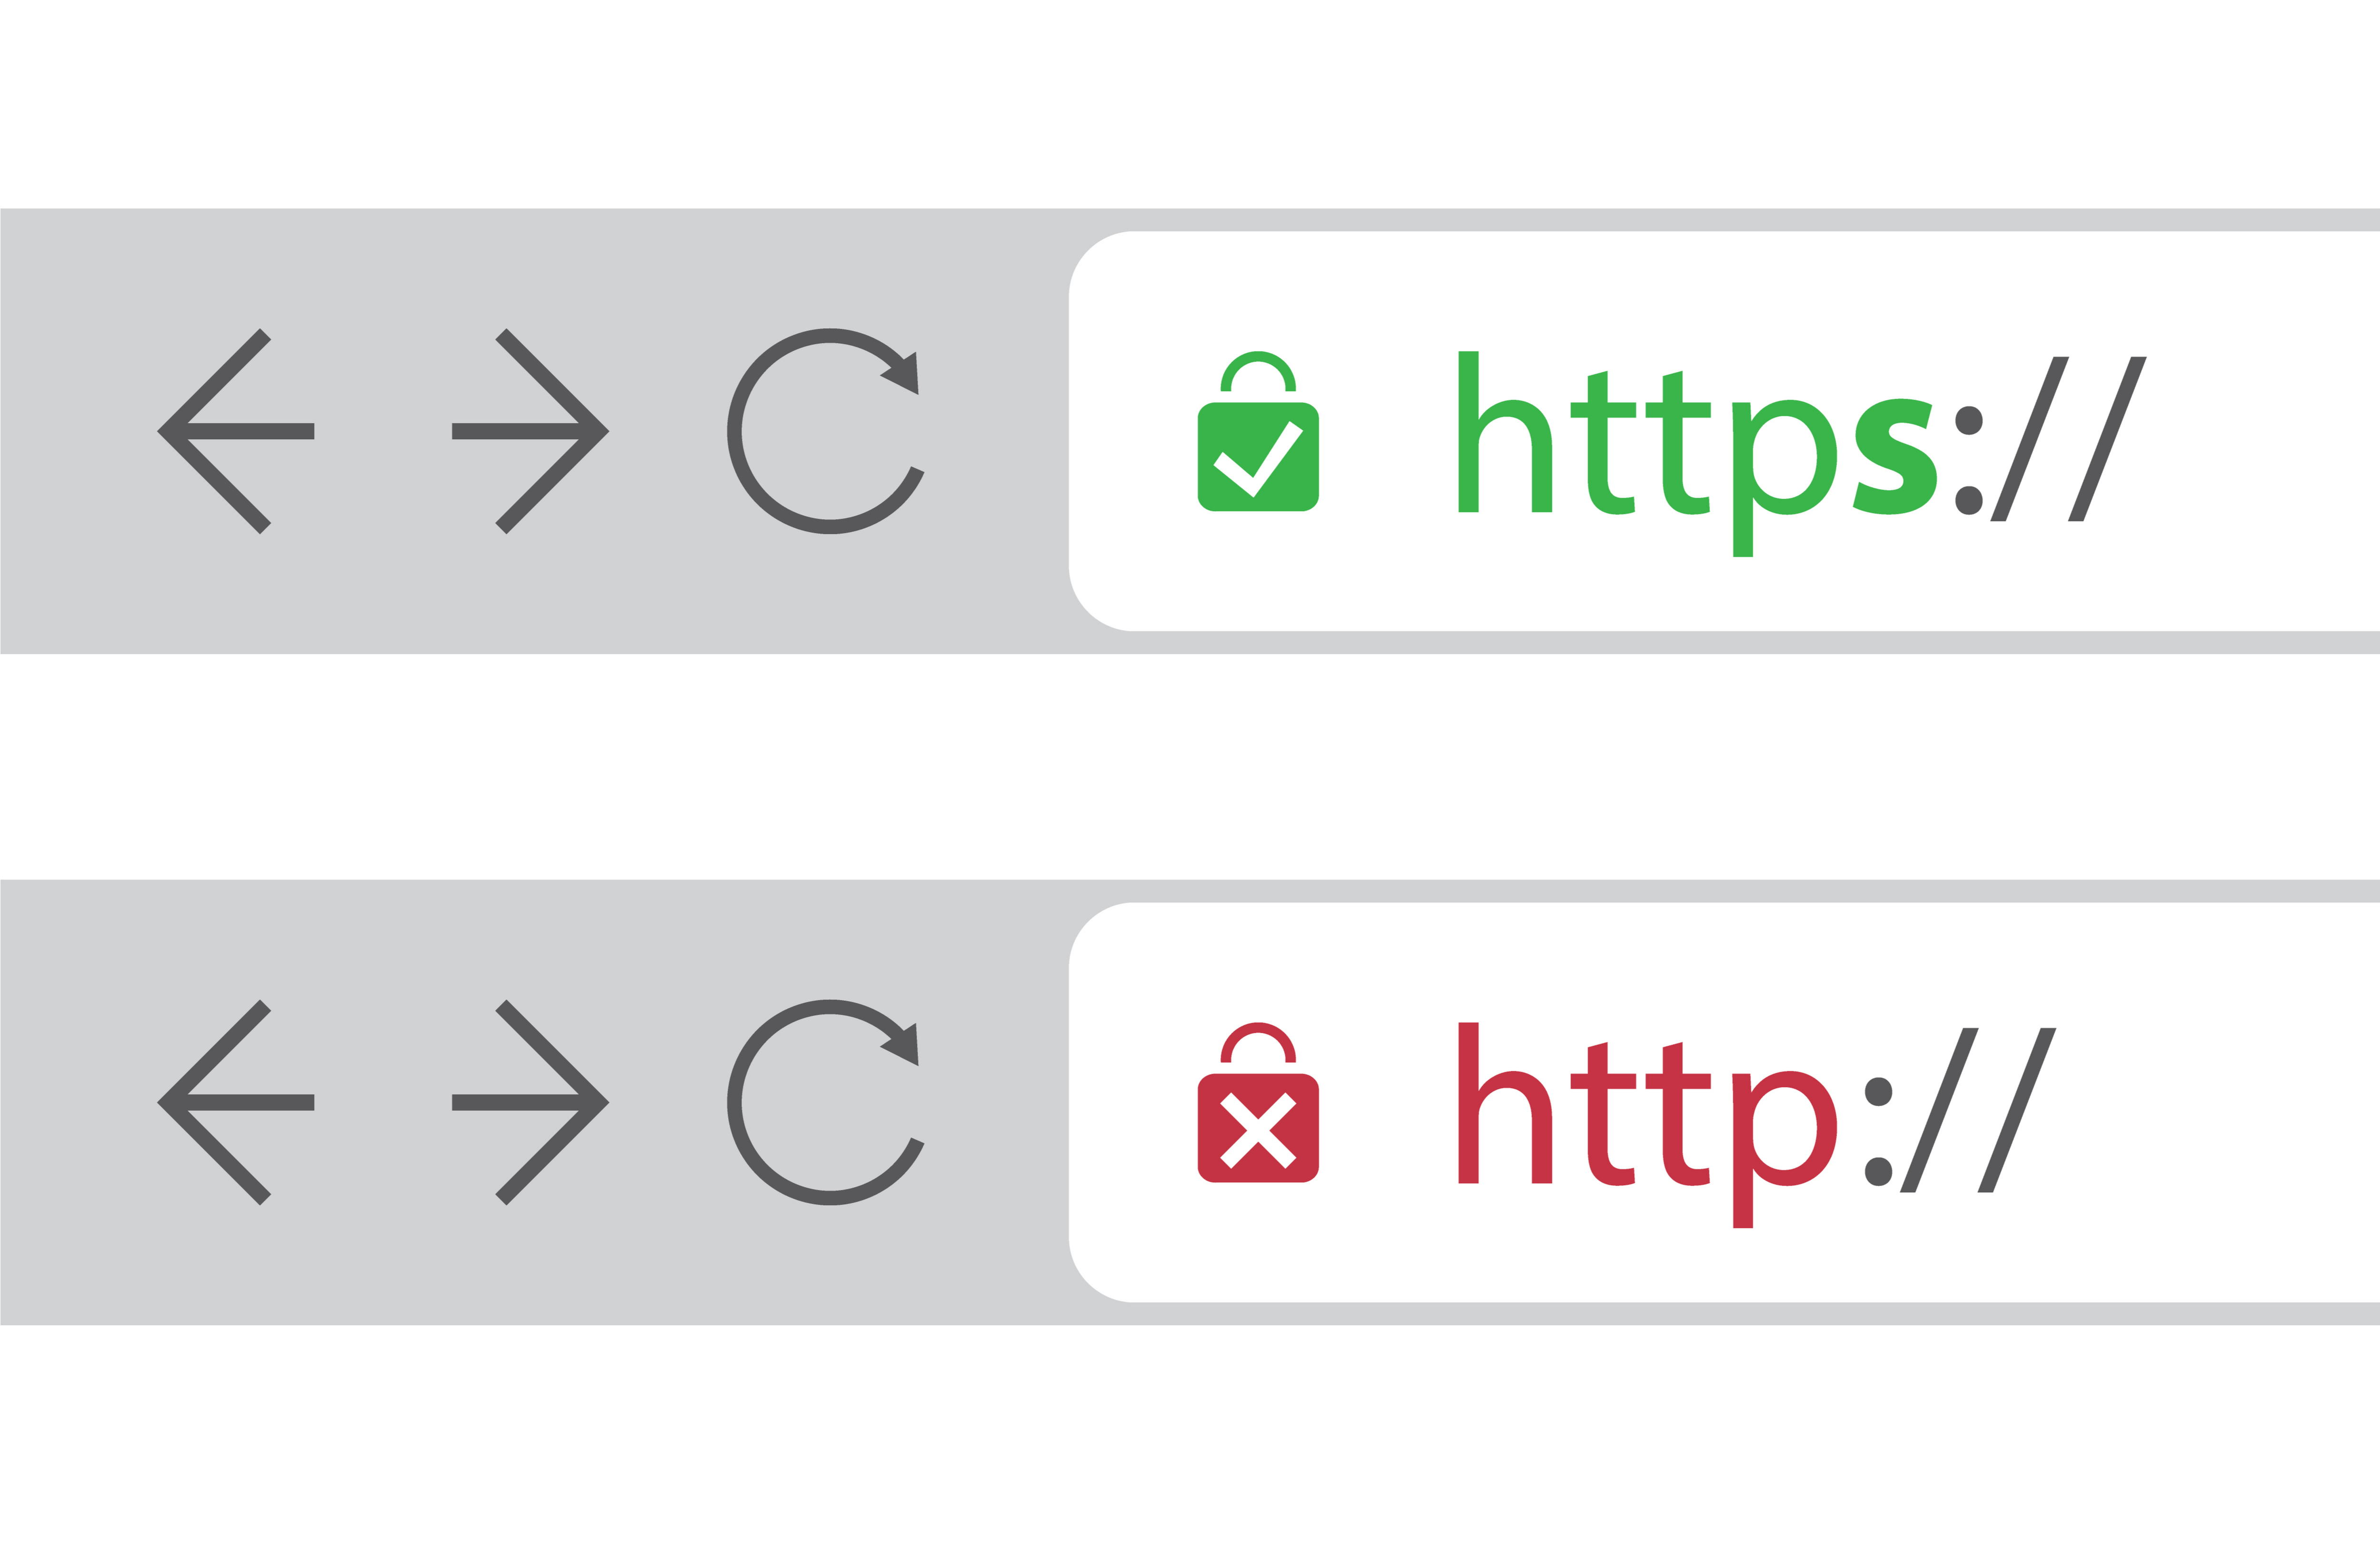 Https. Http+SSL=https. Переход для сайта. «Https», а не «http».. Что означает https: в начале URL-адреса а не http: без s.